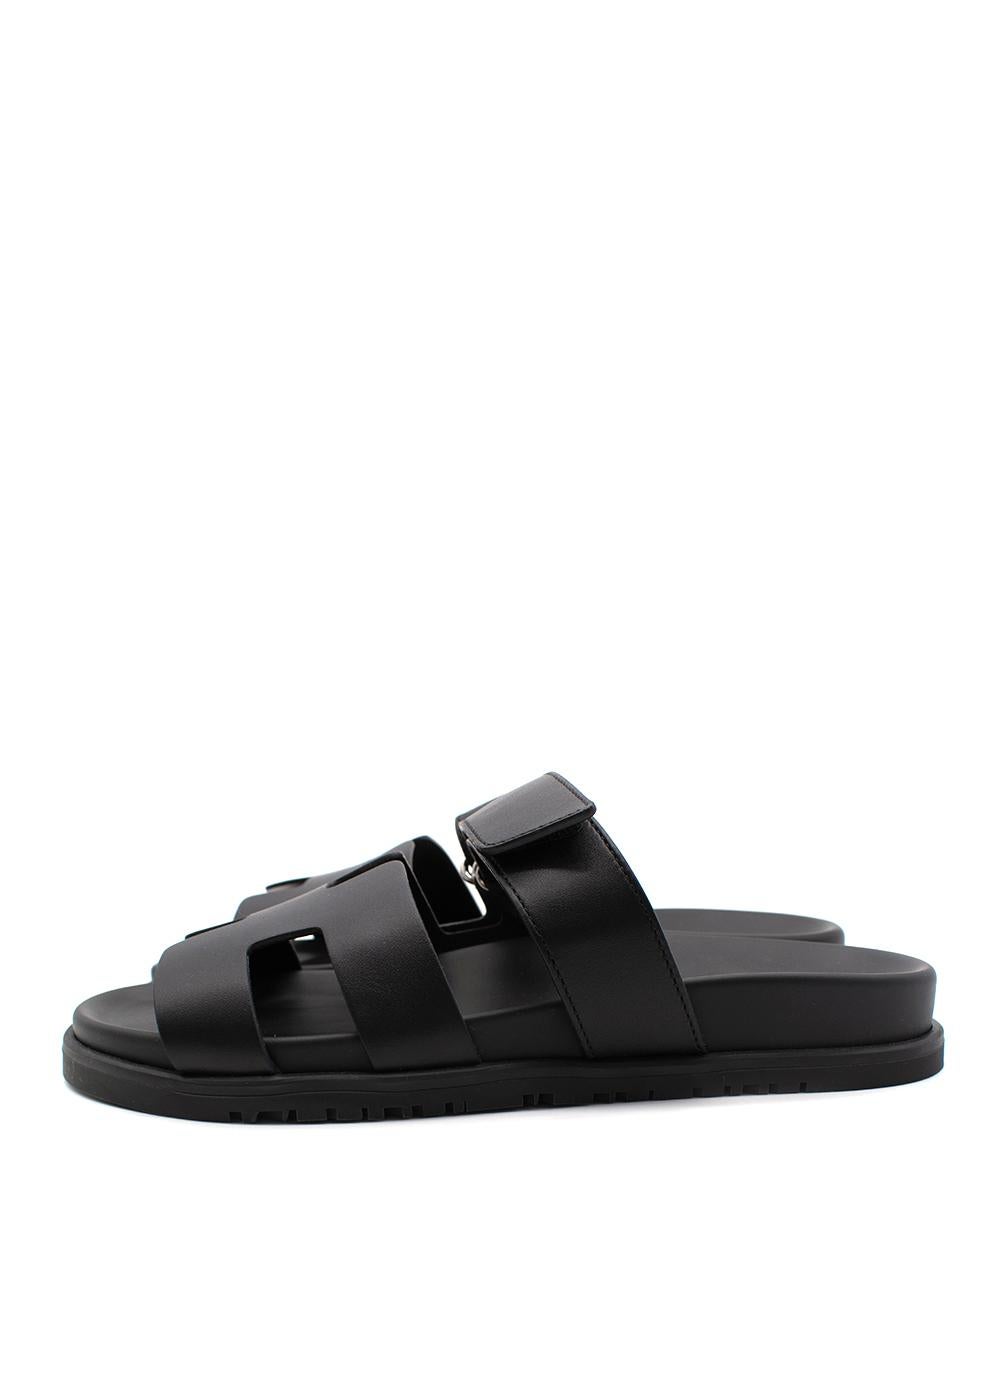 chypre sandals black